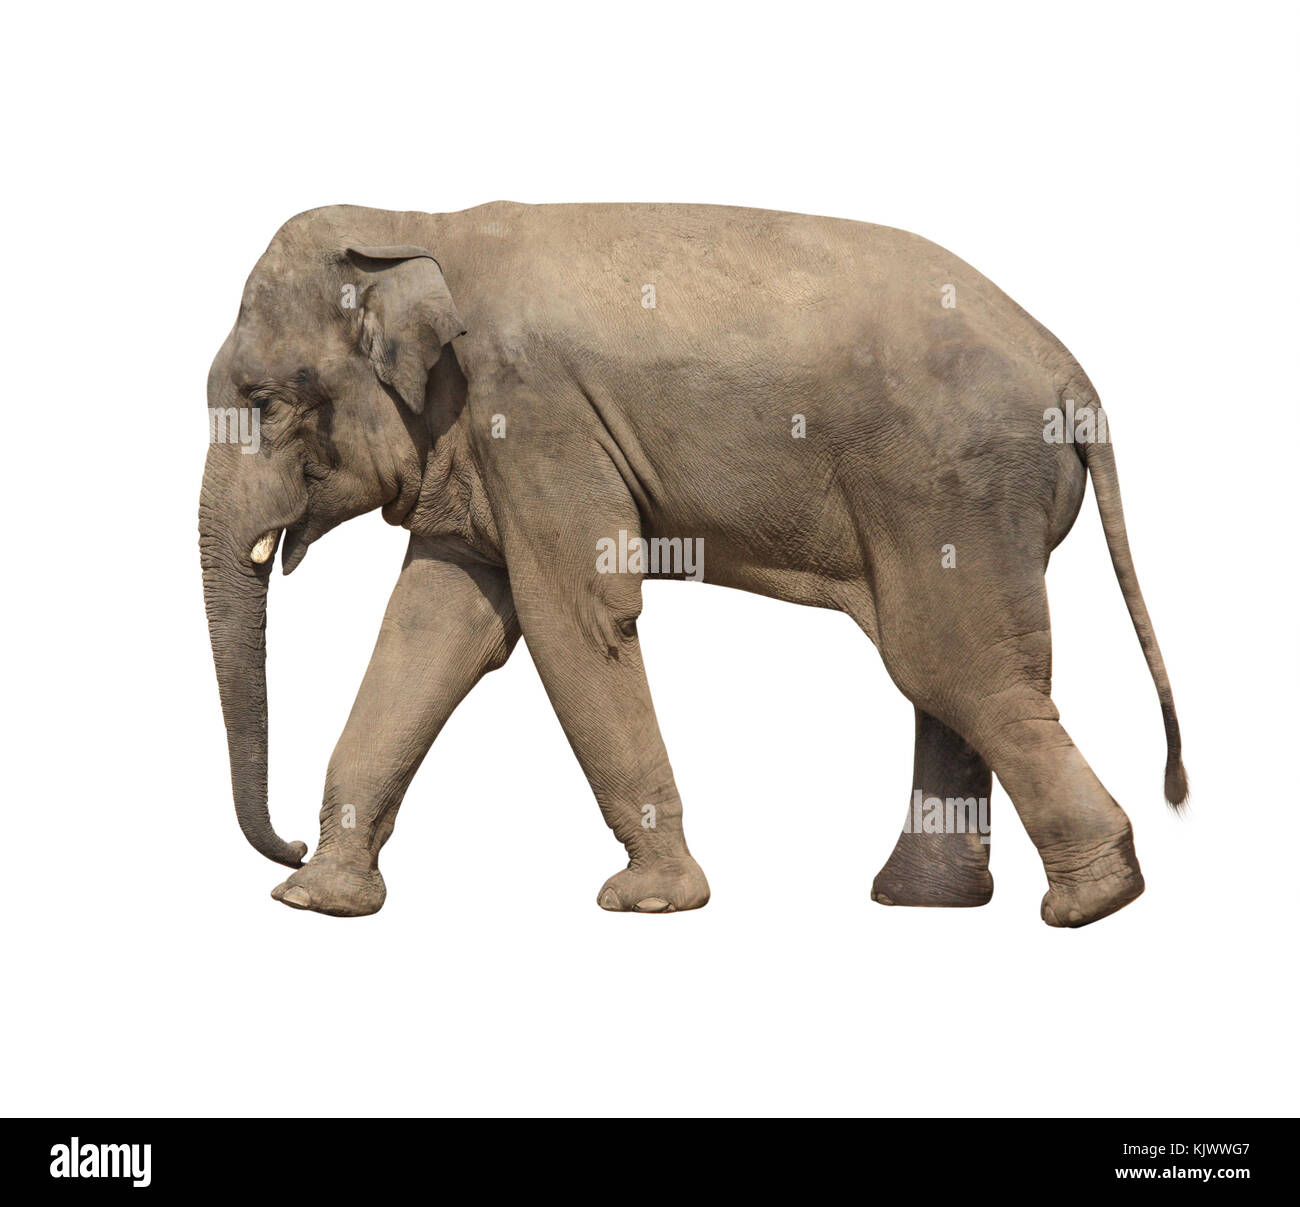 Walking elephant (Elephas maximus). Isolated on white background Stock Photo